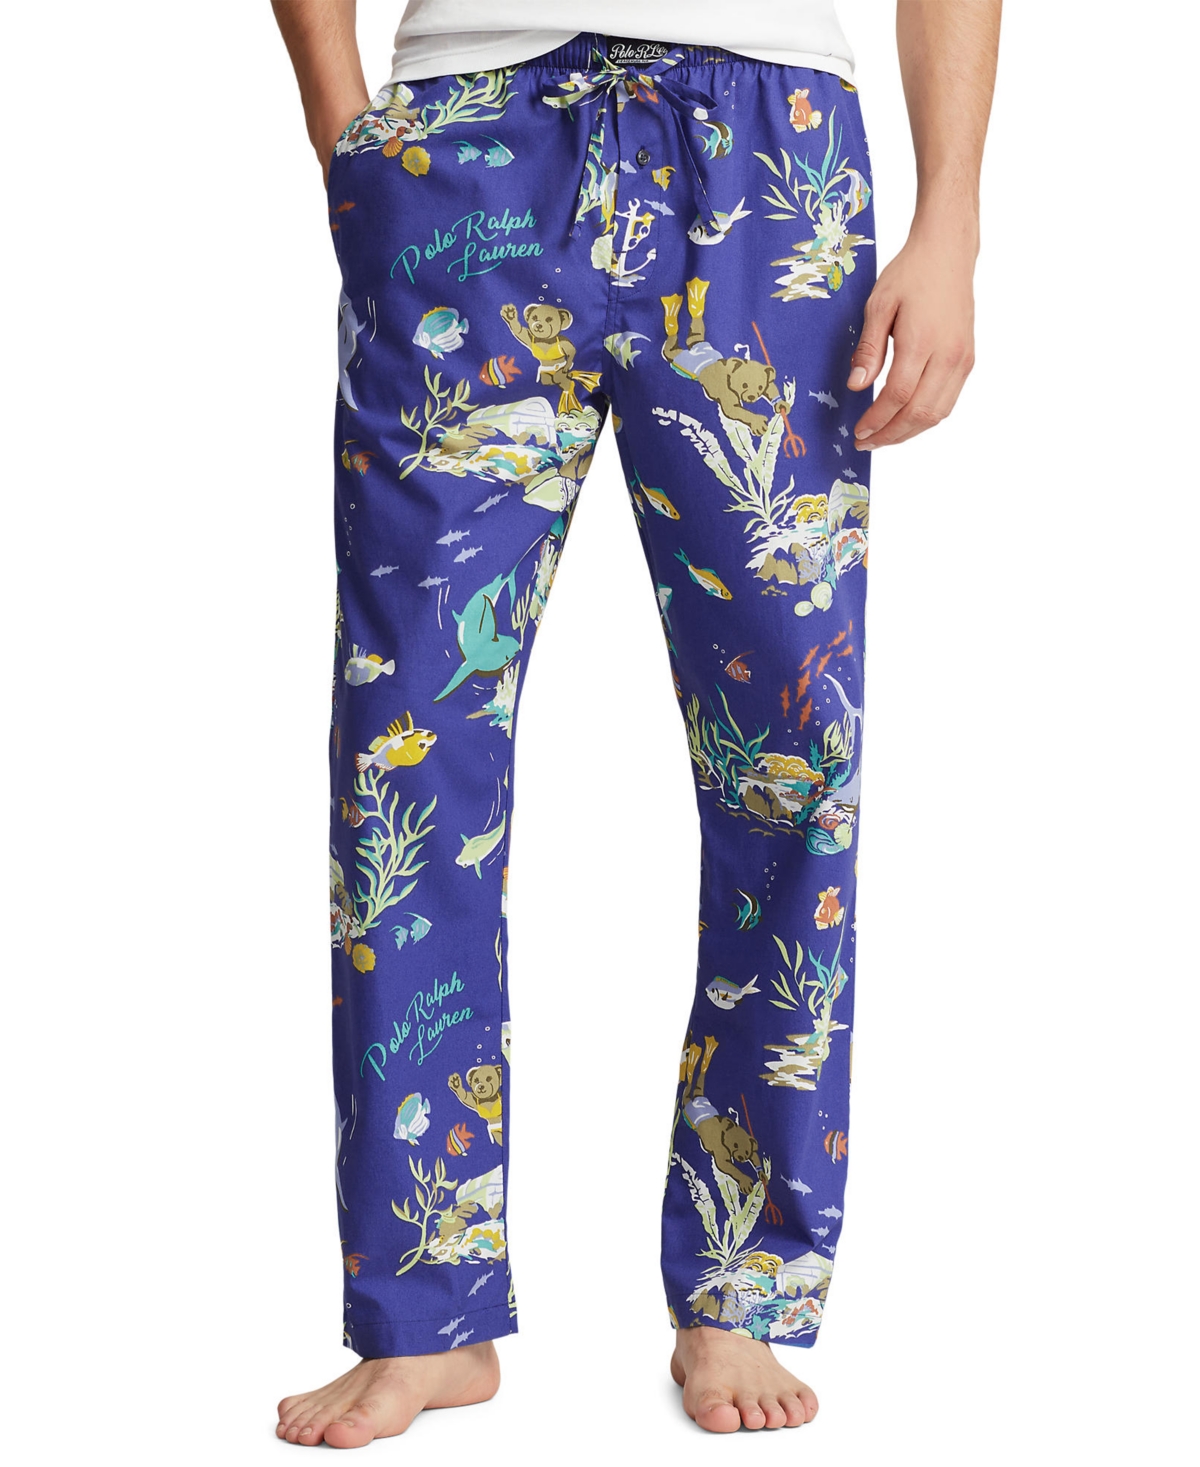 Men's Printed Woven Pajama Pants - REGATTA LEAGUES BELOW PRINT